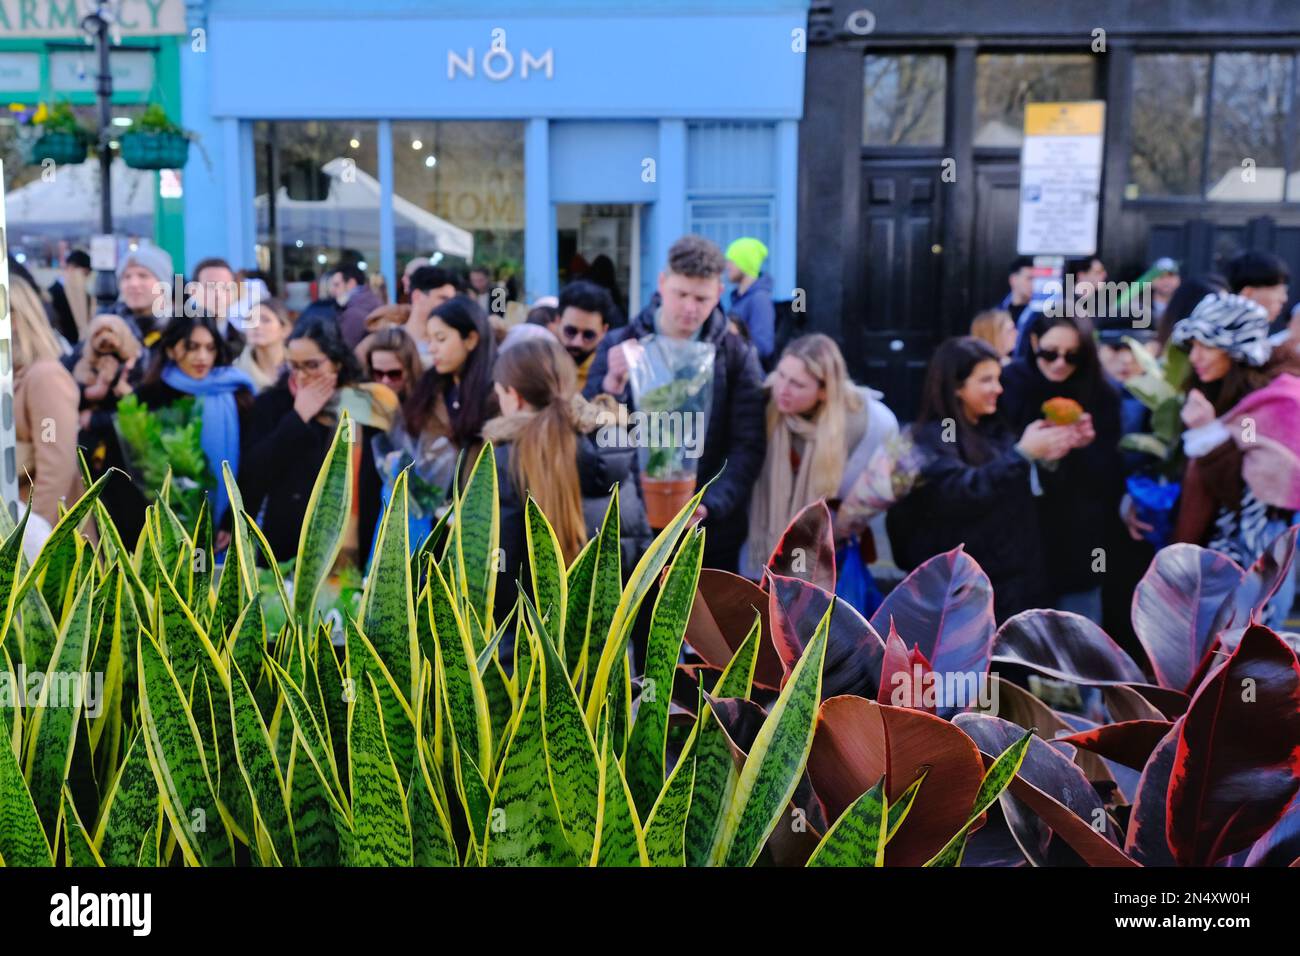 Londra, Regno Unito. Una vista generale del mercato dei fiori di Columbia Road con i clienti che guardano le bancarelle. Foto Stock